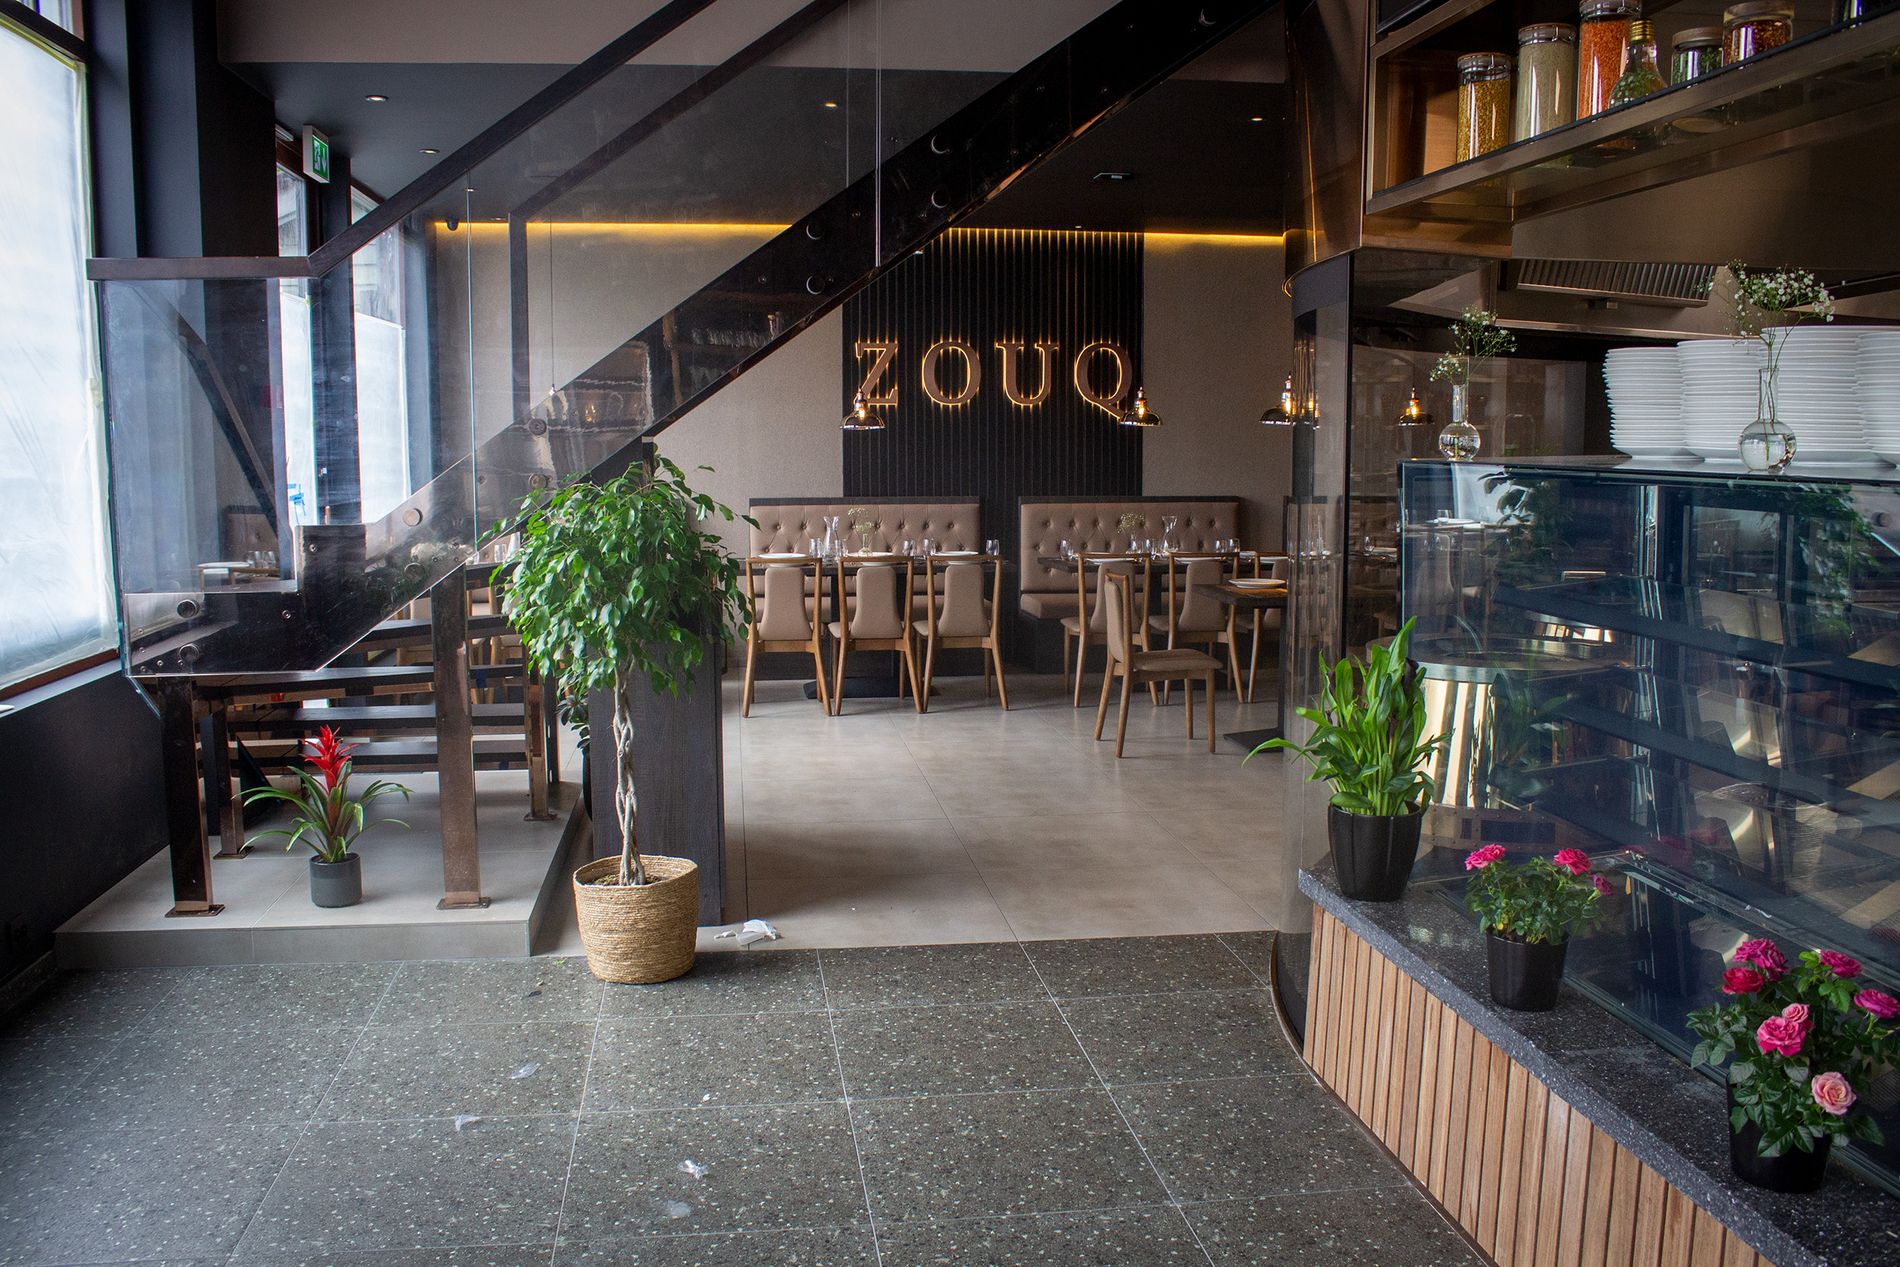 Zouq startet opp i Pedersgata i april 2014. Siden den gang har antall ansatte vokst fra seks til elleve. Nå flytter de snart inn i nye lokaler, i samme gate. 